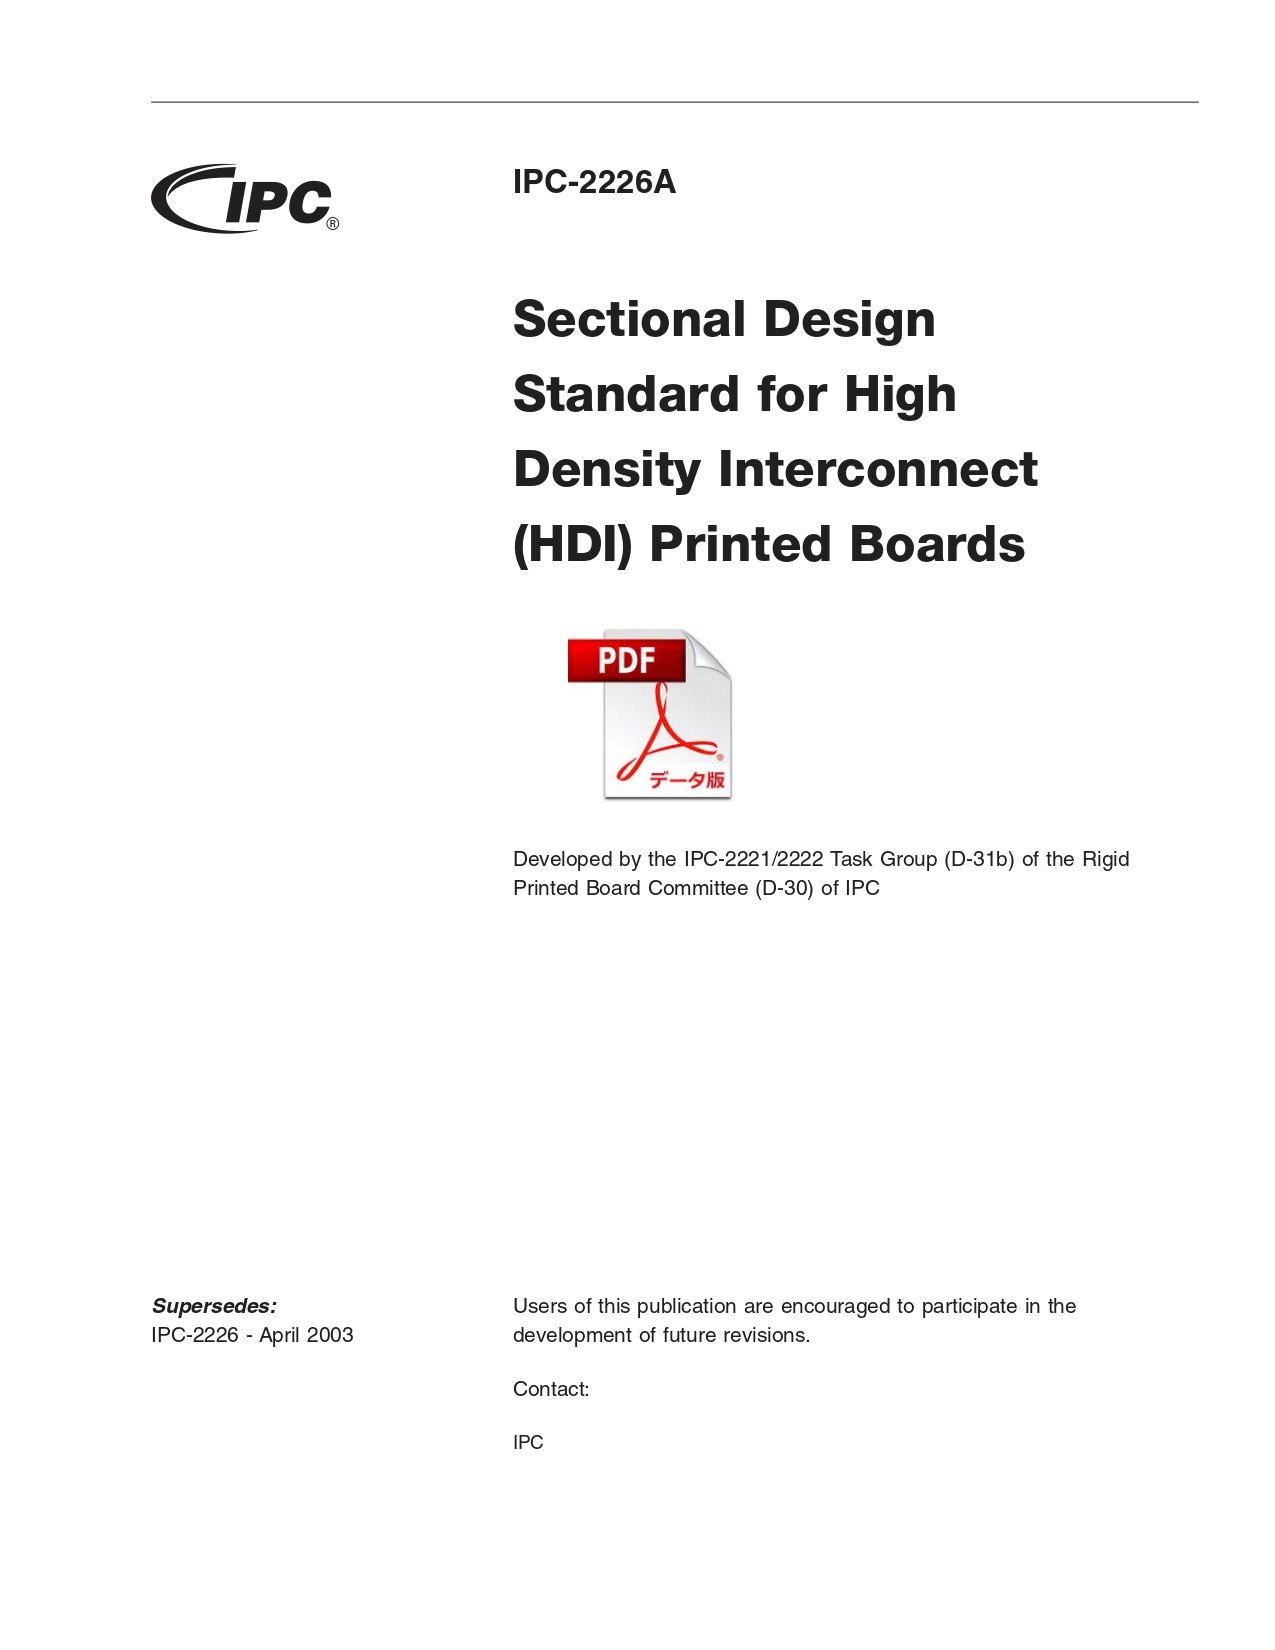 ［英語版］IPC-2226A: Sectional Design Standard for High Density Interconnect (HDI) Printed Boards